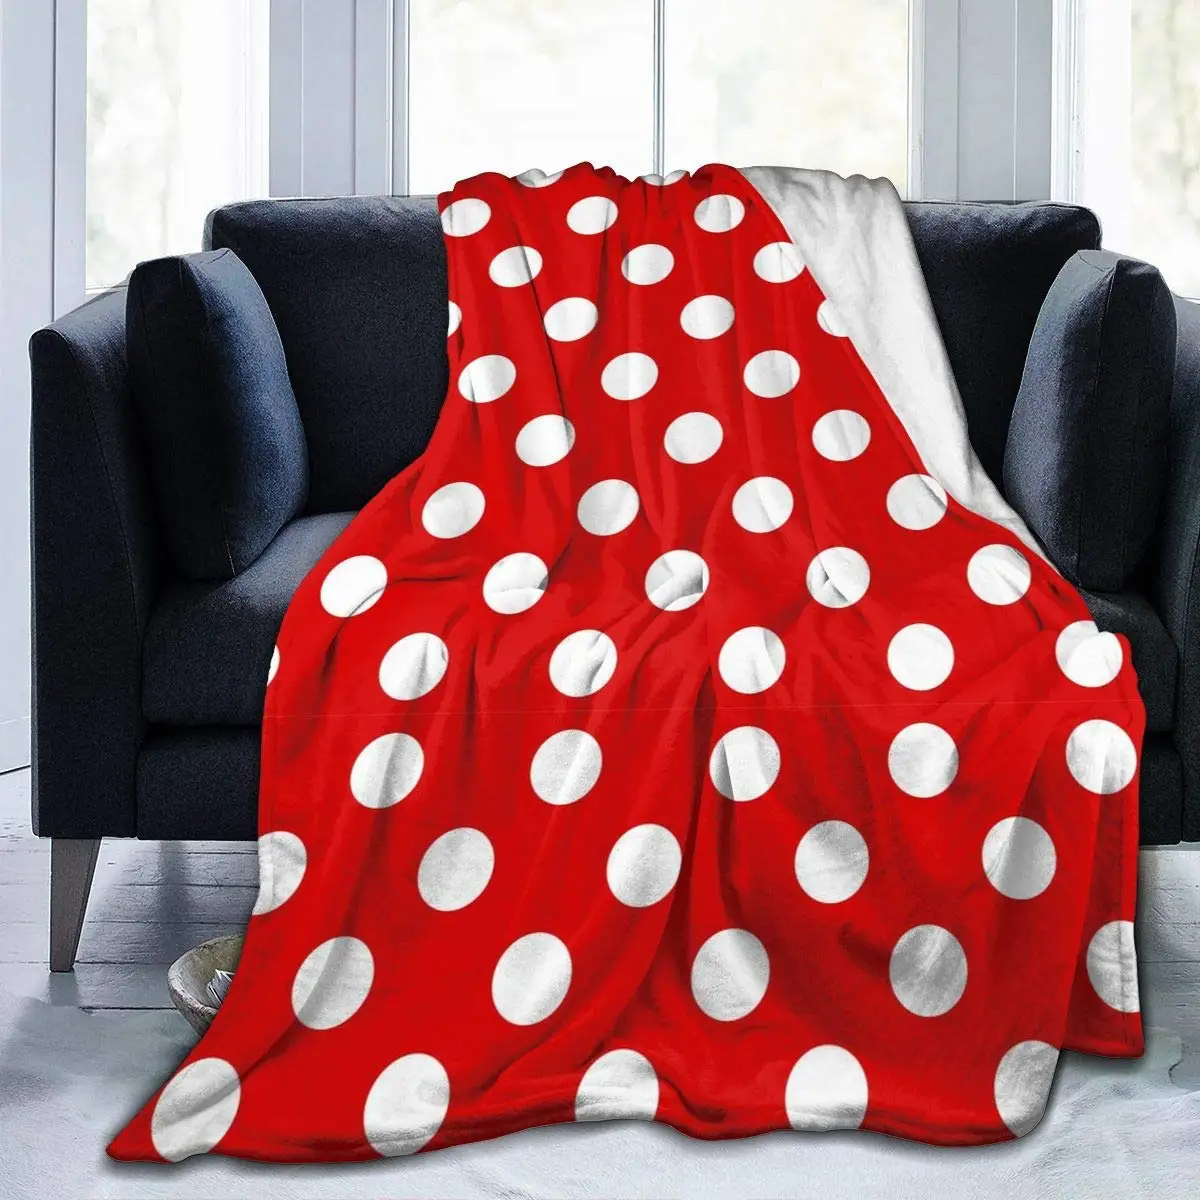 

Фланелевое Одеяло в красный горошек, легкий удобный плед для кровати, мягкое покрывало для дивана, подходит для любого сезона, 150x200 см